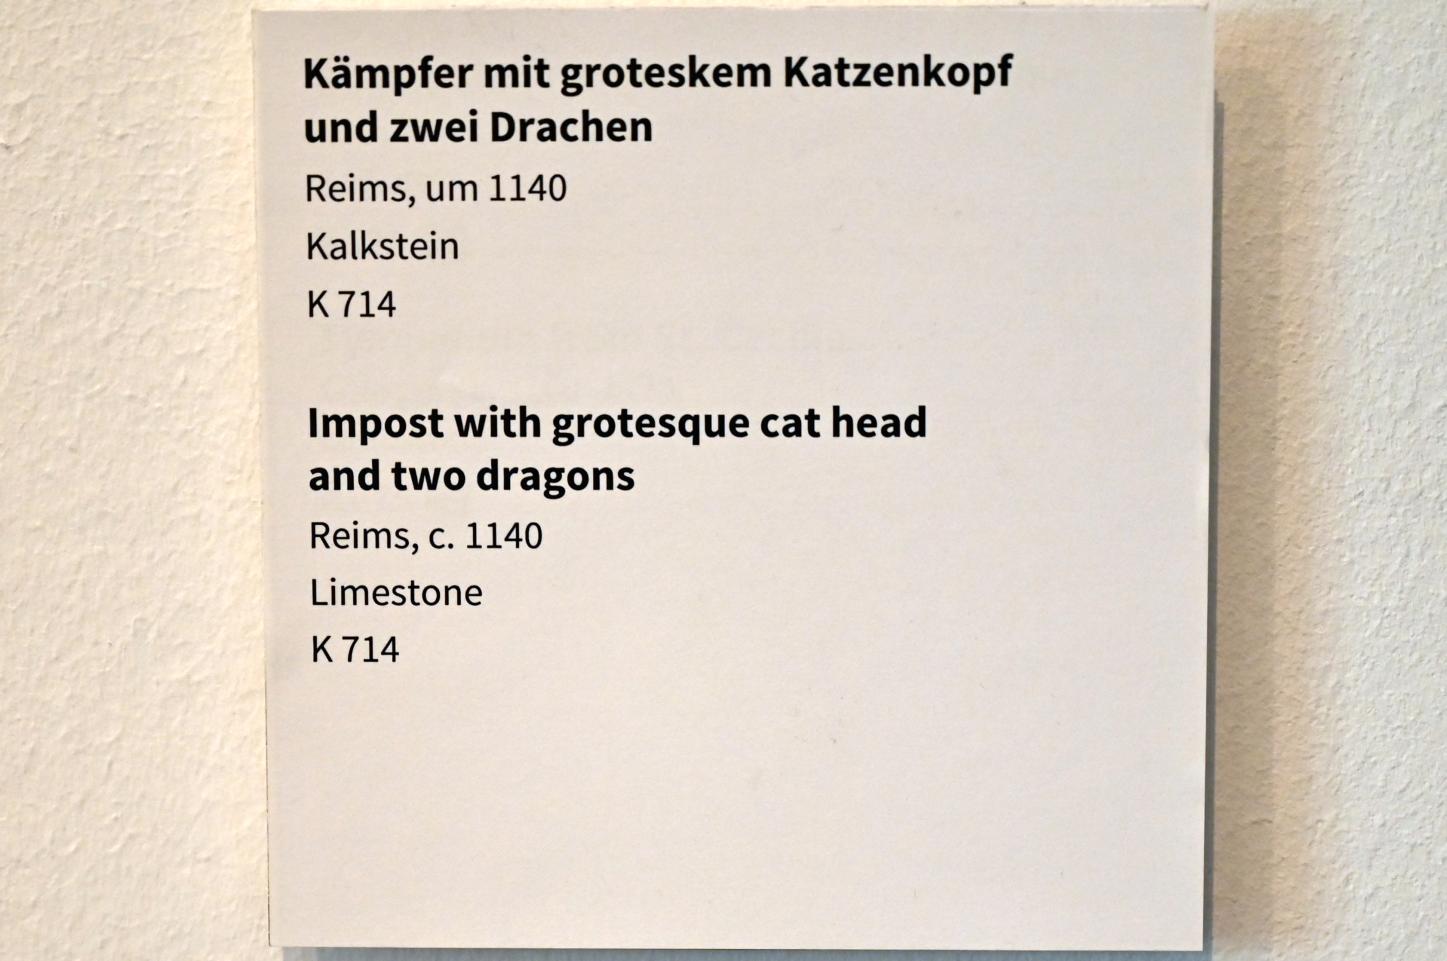 Kämpfer mit groteskem Katzenkopf und zwei Drachen, Köln, Museum Schnütgen, Saal 2, um 1140, Bild 3/3